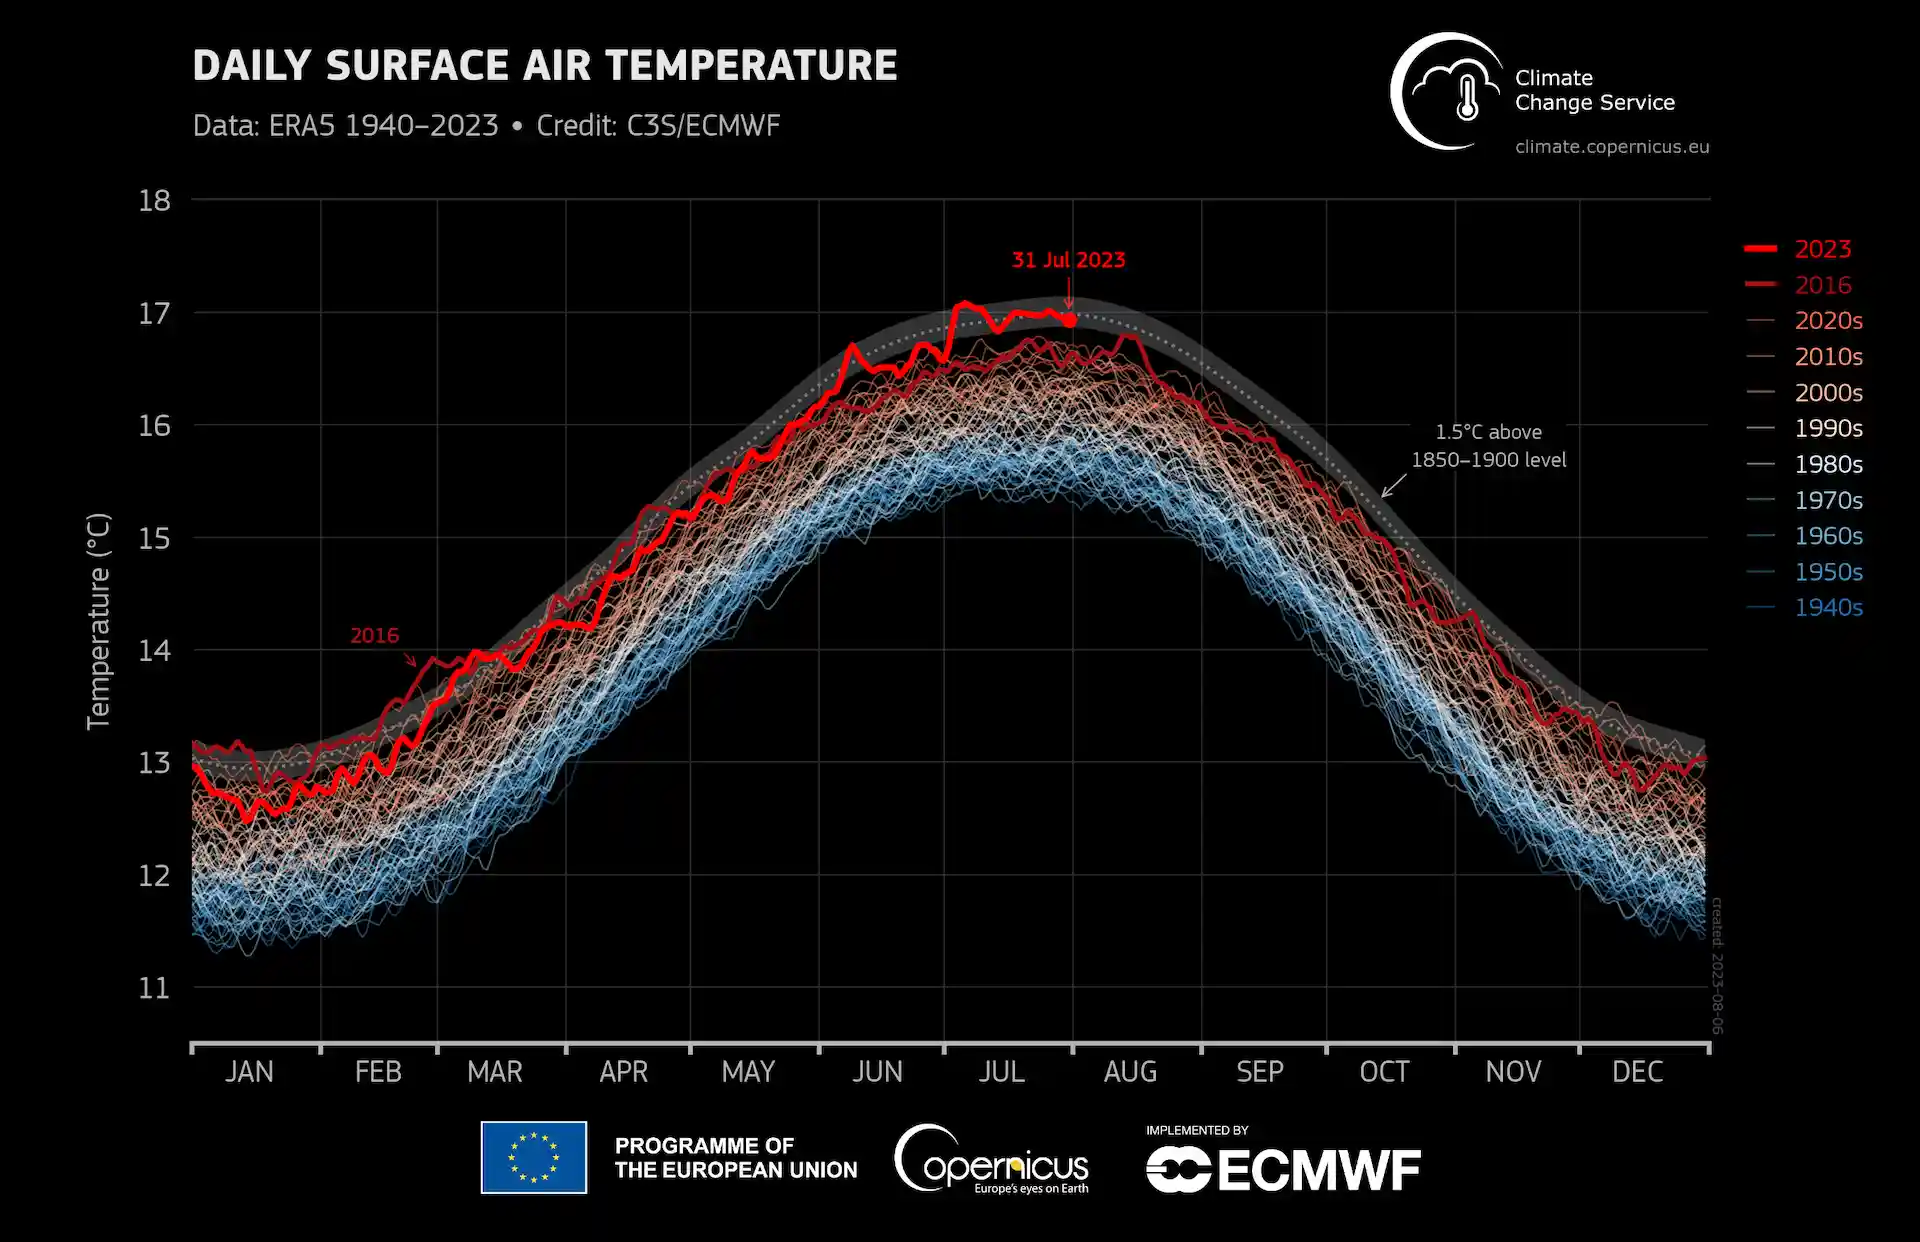 Temperatura global diaria del aire en la superficie (°C) desde el 1 de enero de 1940 hasta el 31 de julio de 2023, representada como serie temporal para cada año / Grafico: Copernicus